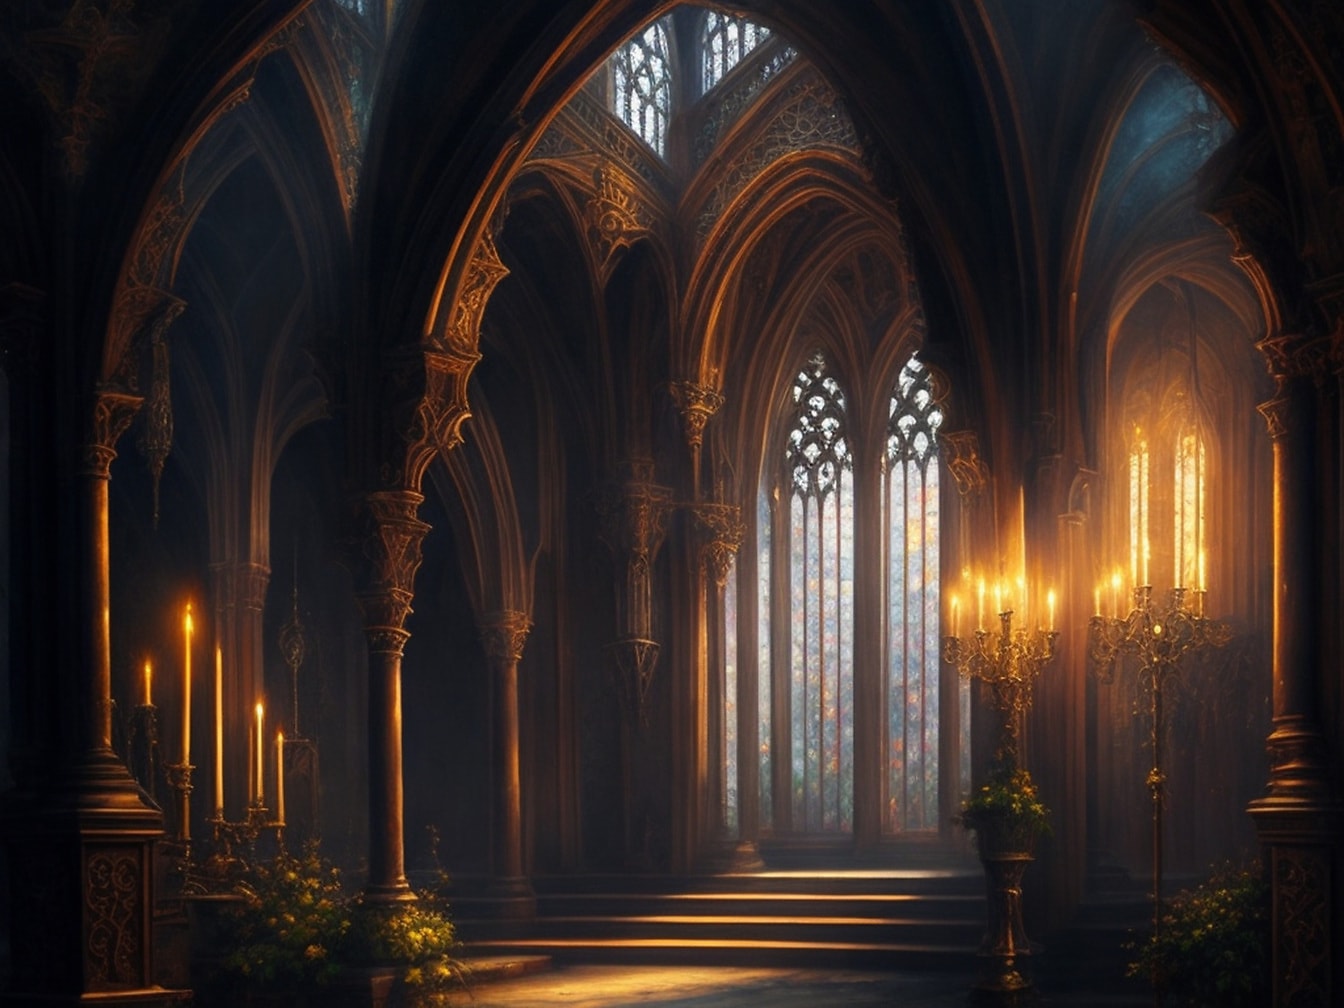 Interiorul catedralei gotice cu ilustrație la lumina lumânărilor